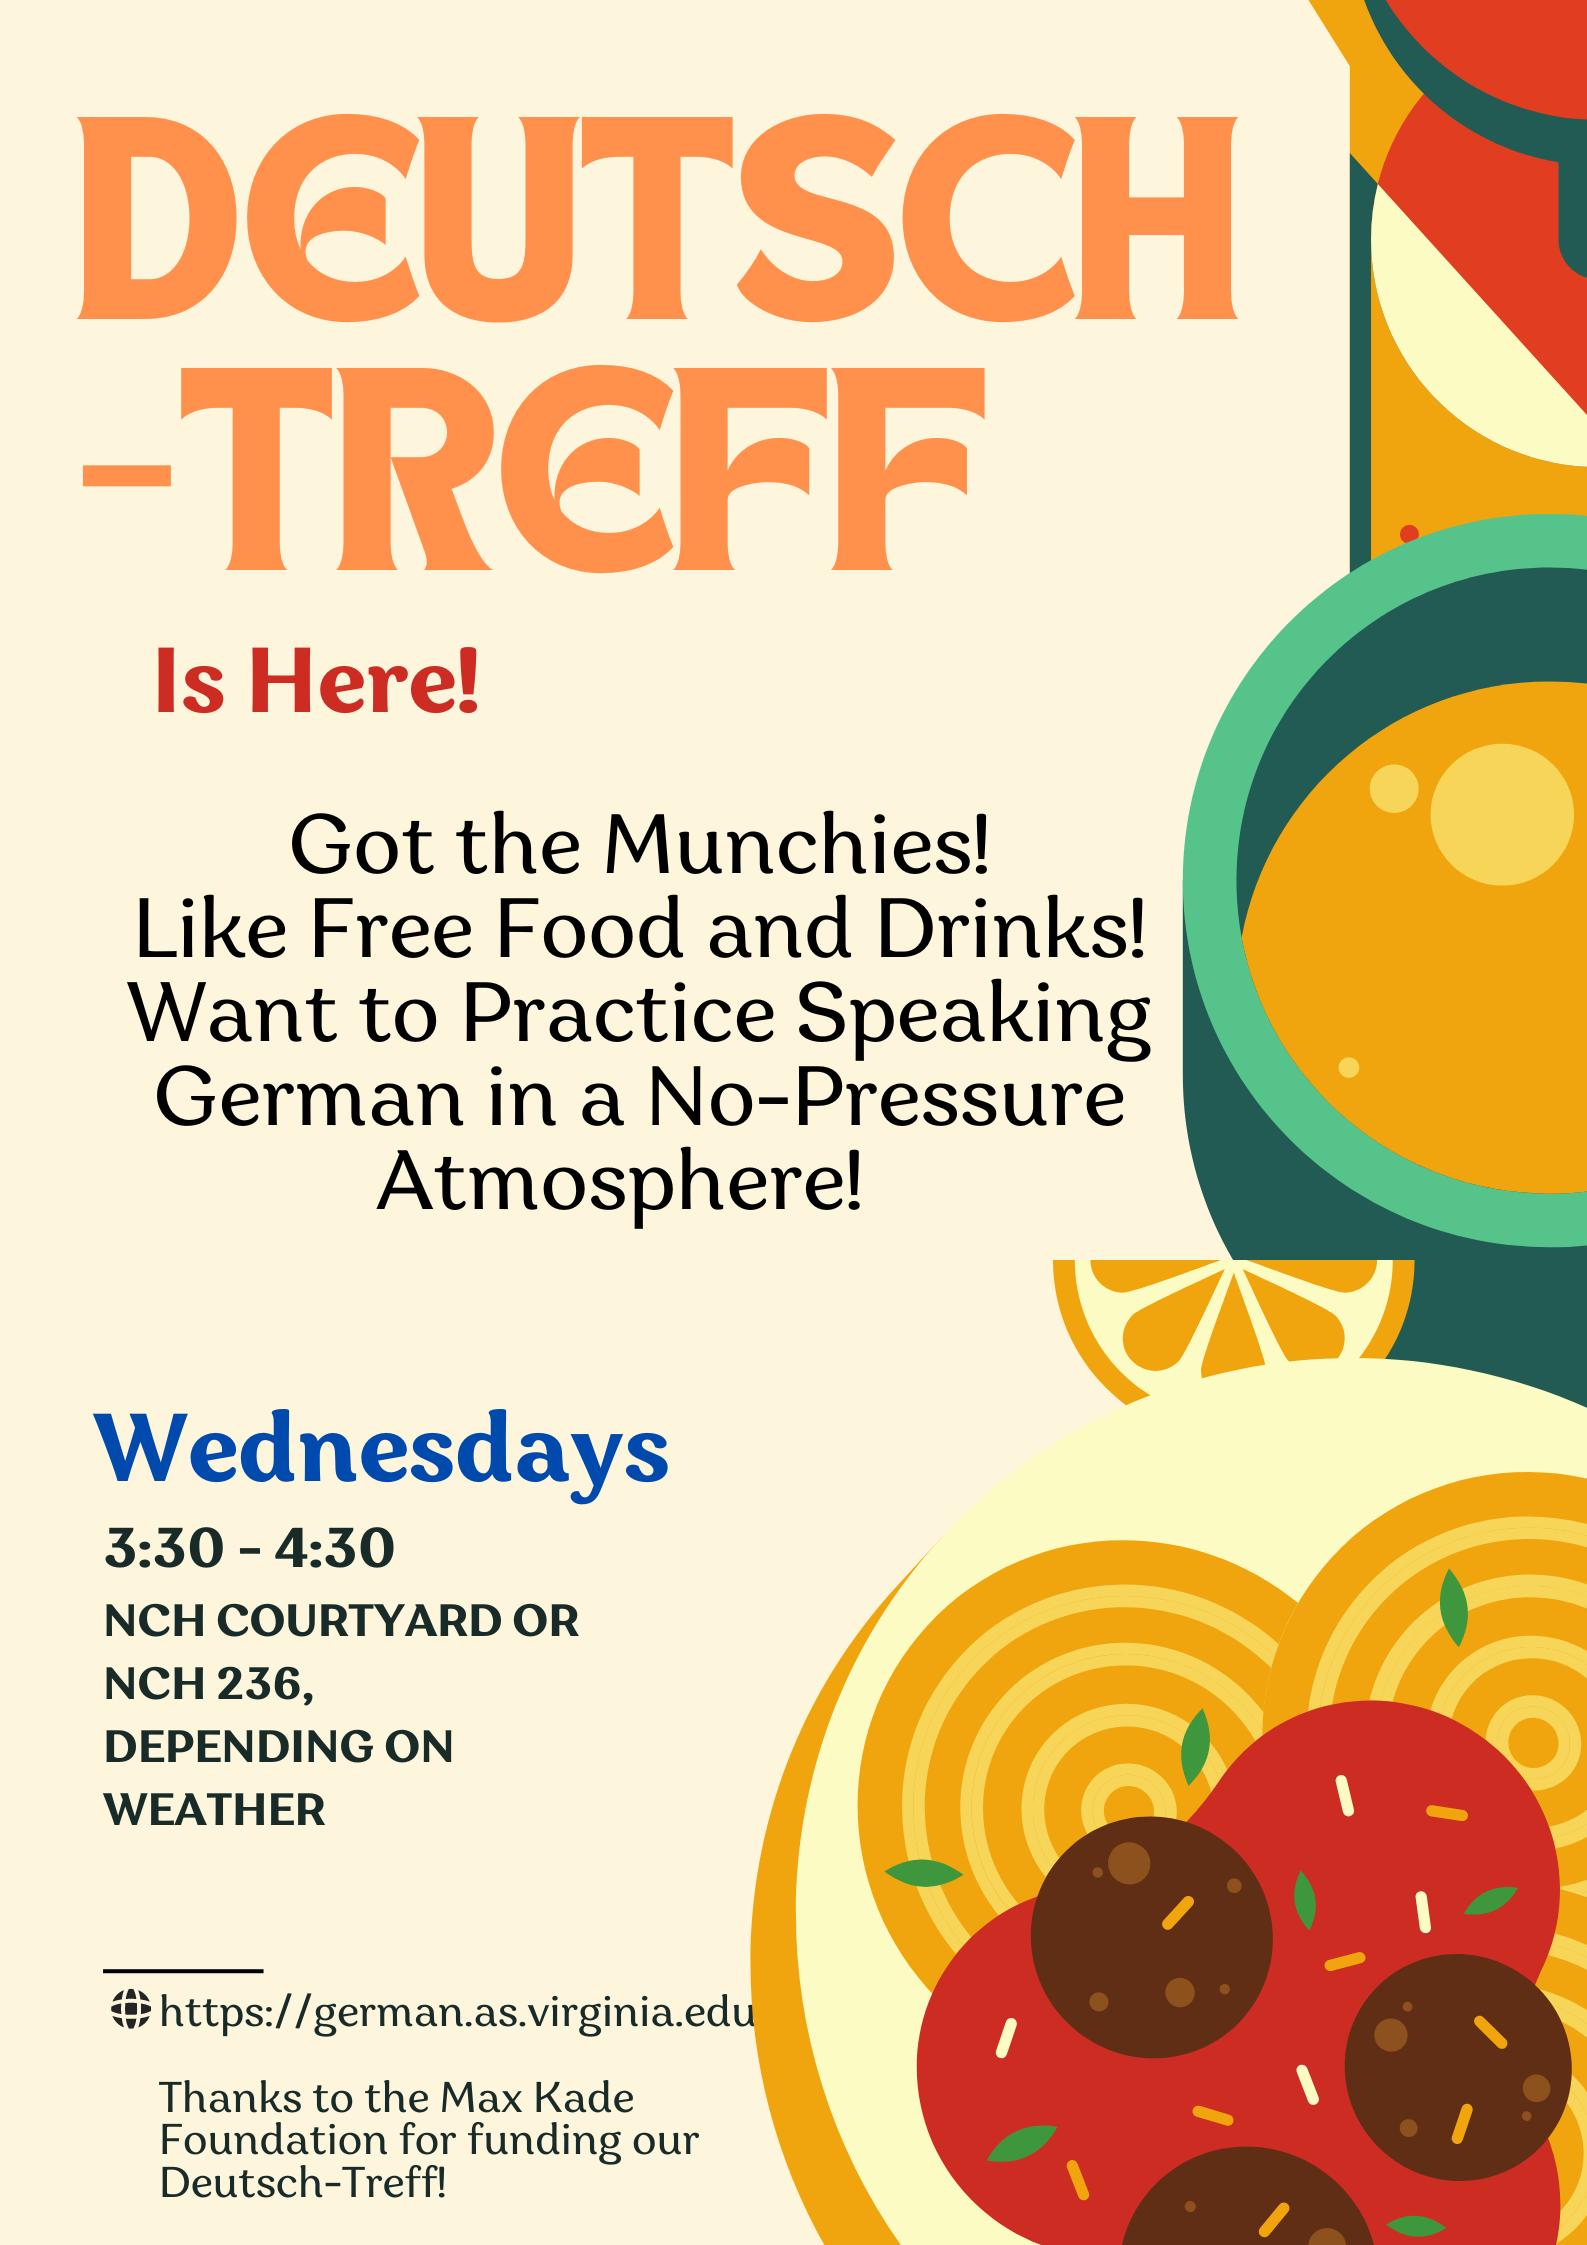 Deutsch-treff informational poster